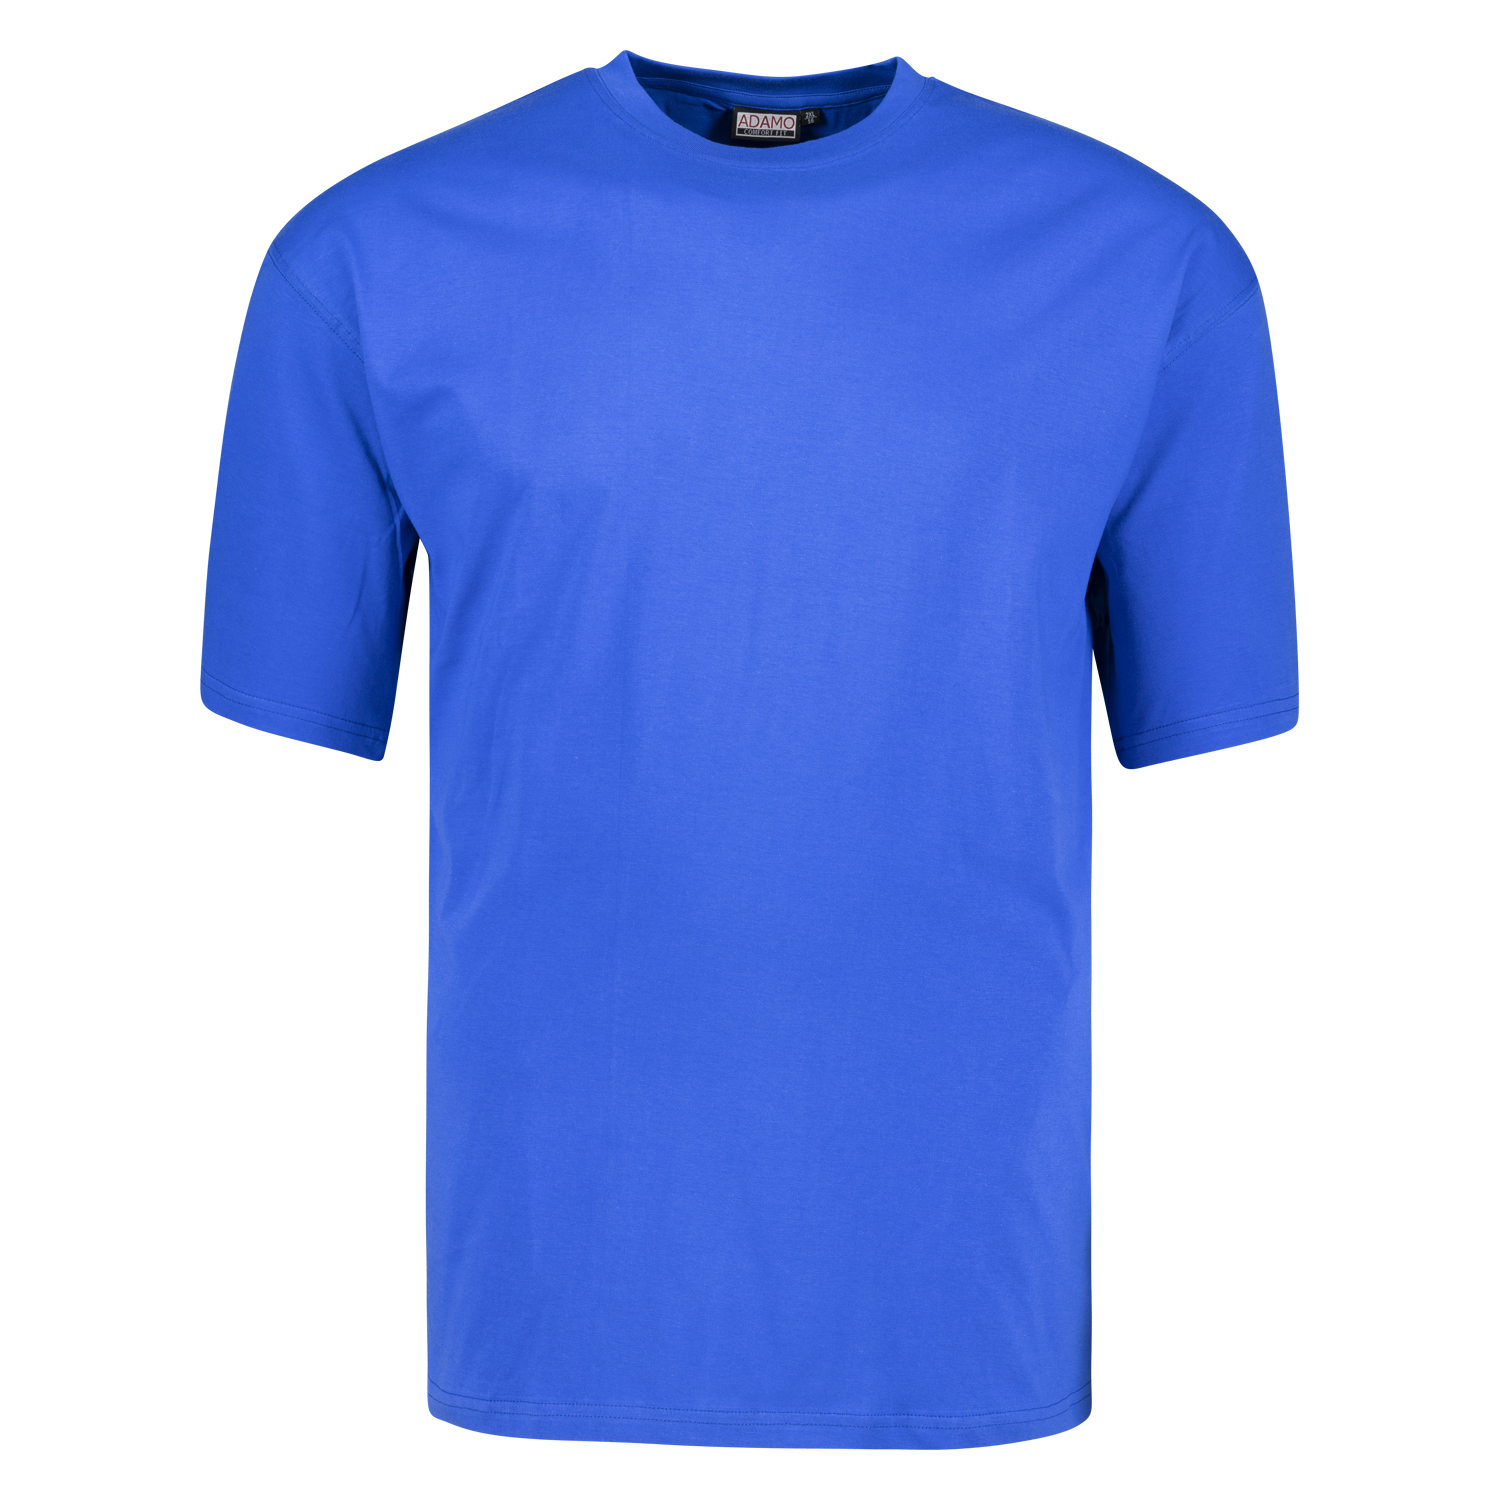 T-shirt en bleu royal avec col rond Tall Fit extra long série Magic by Adamo en longues tailles jusqu'au 122